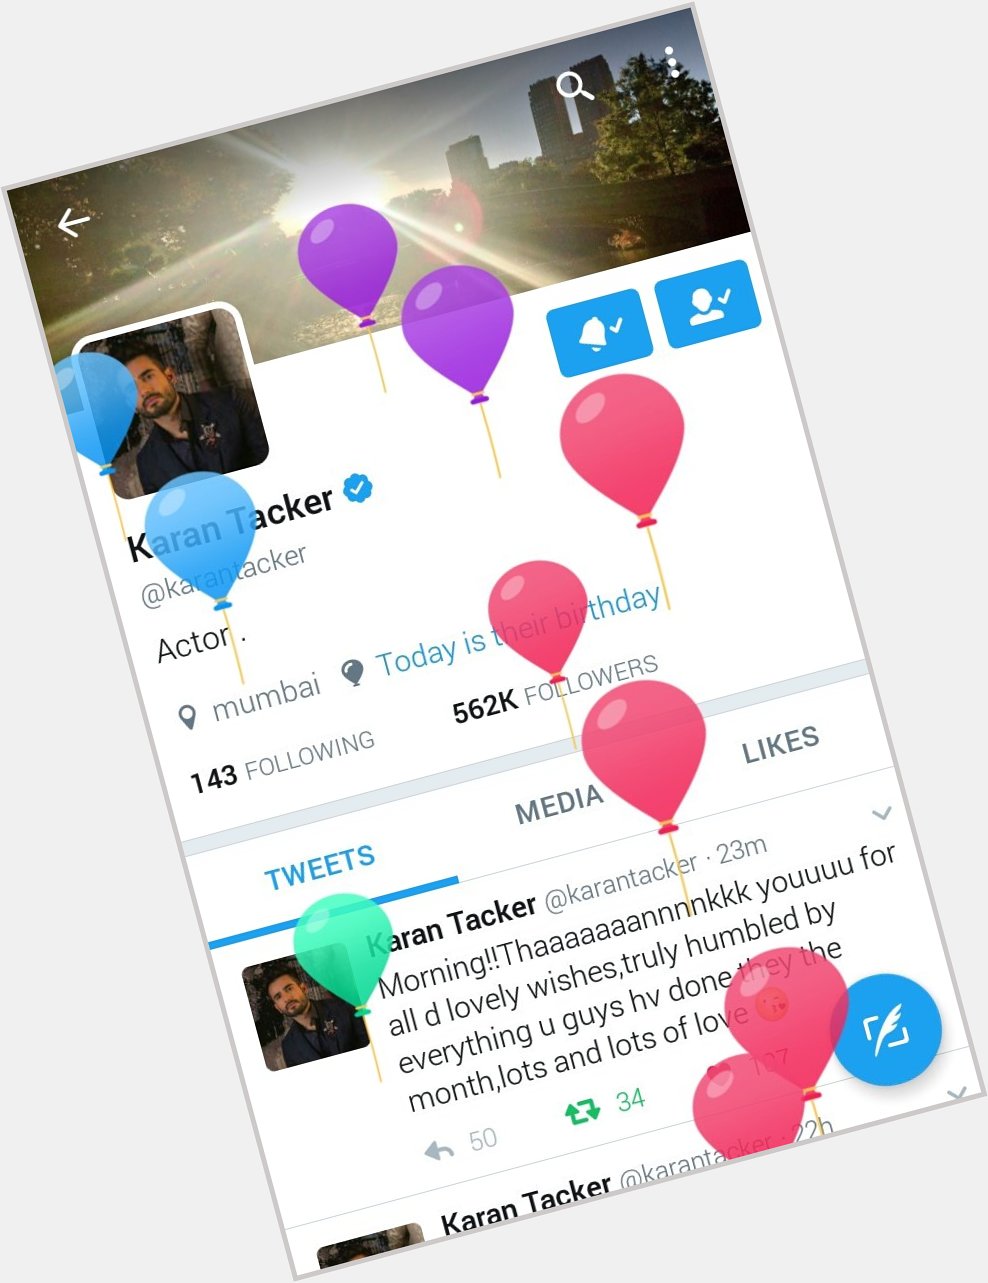 Loving the balloon profile!   Happy Birthday Karan Tacker   